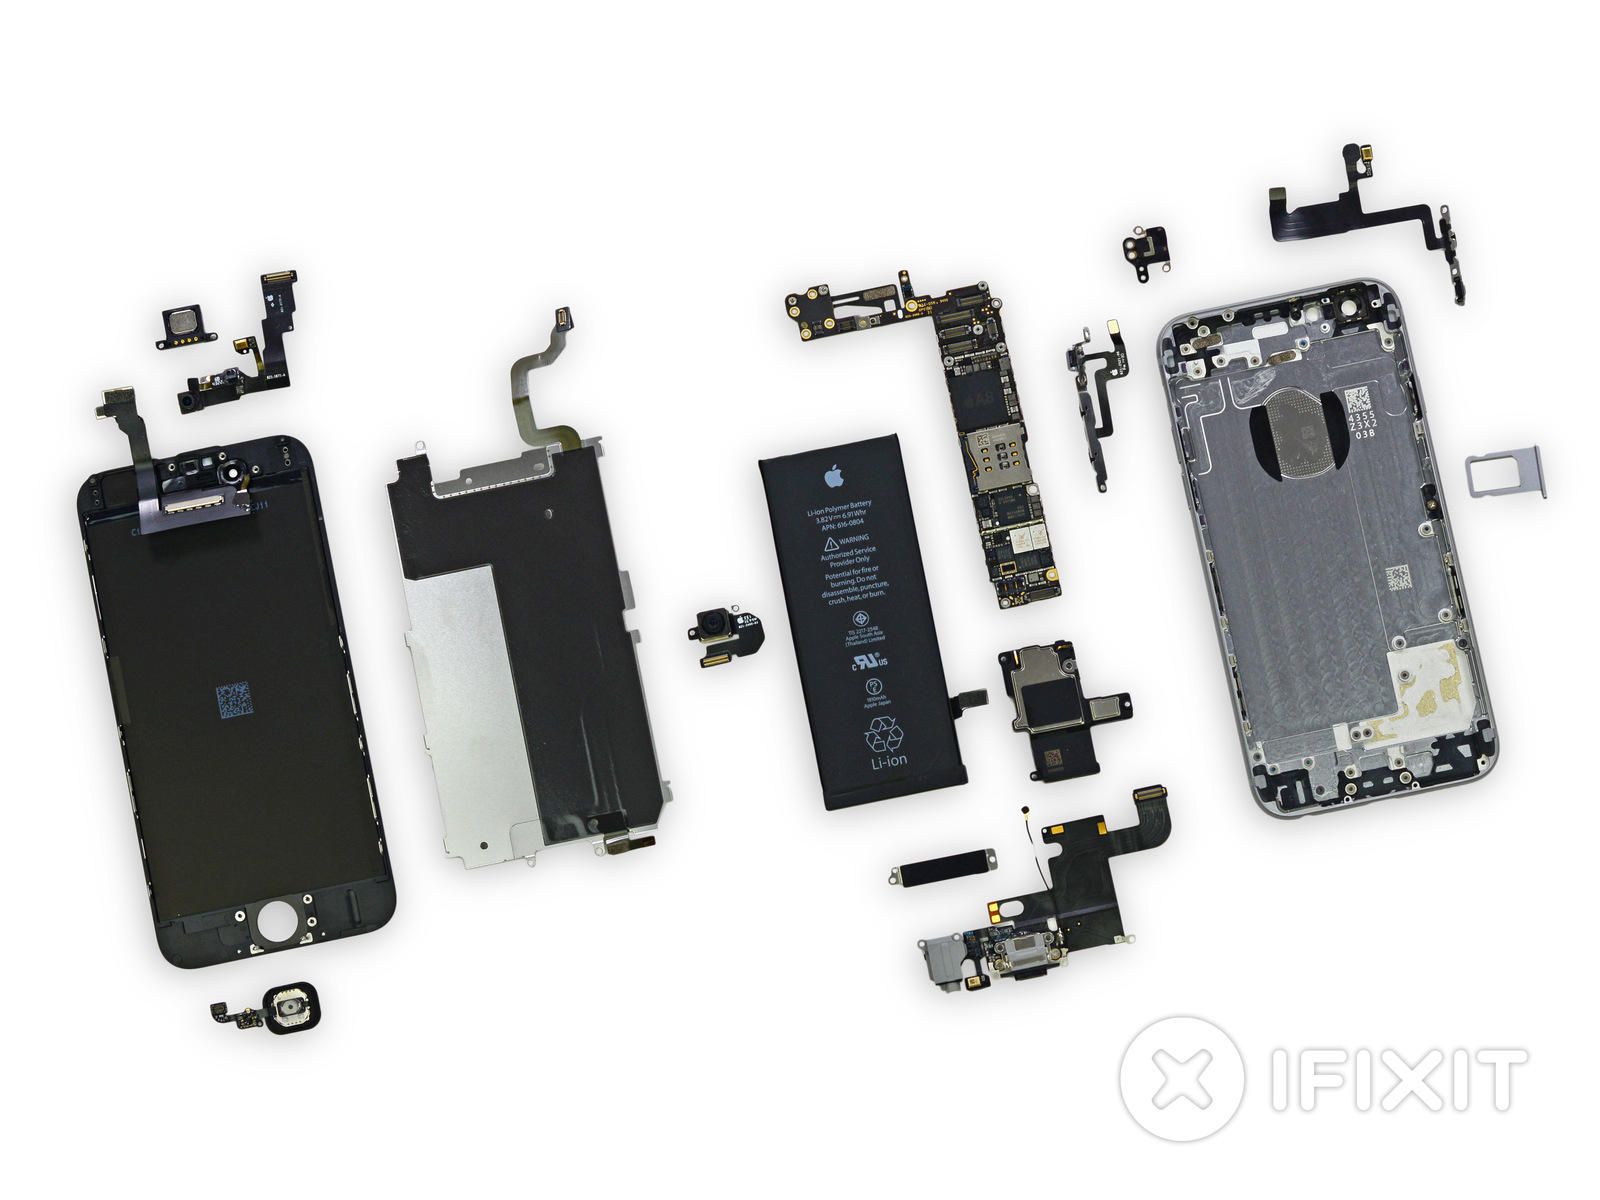 componenti iphone 6 teaser htc u12+